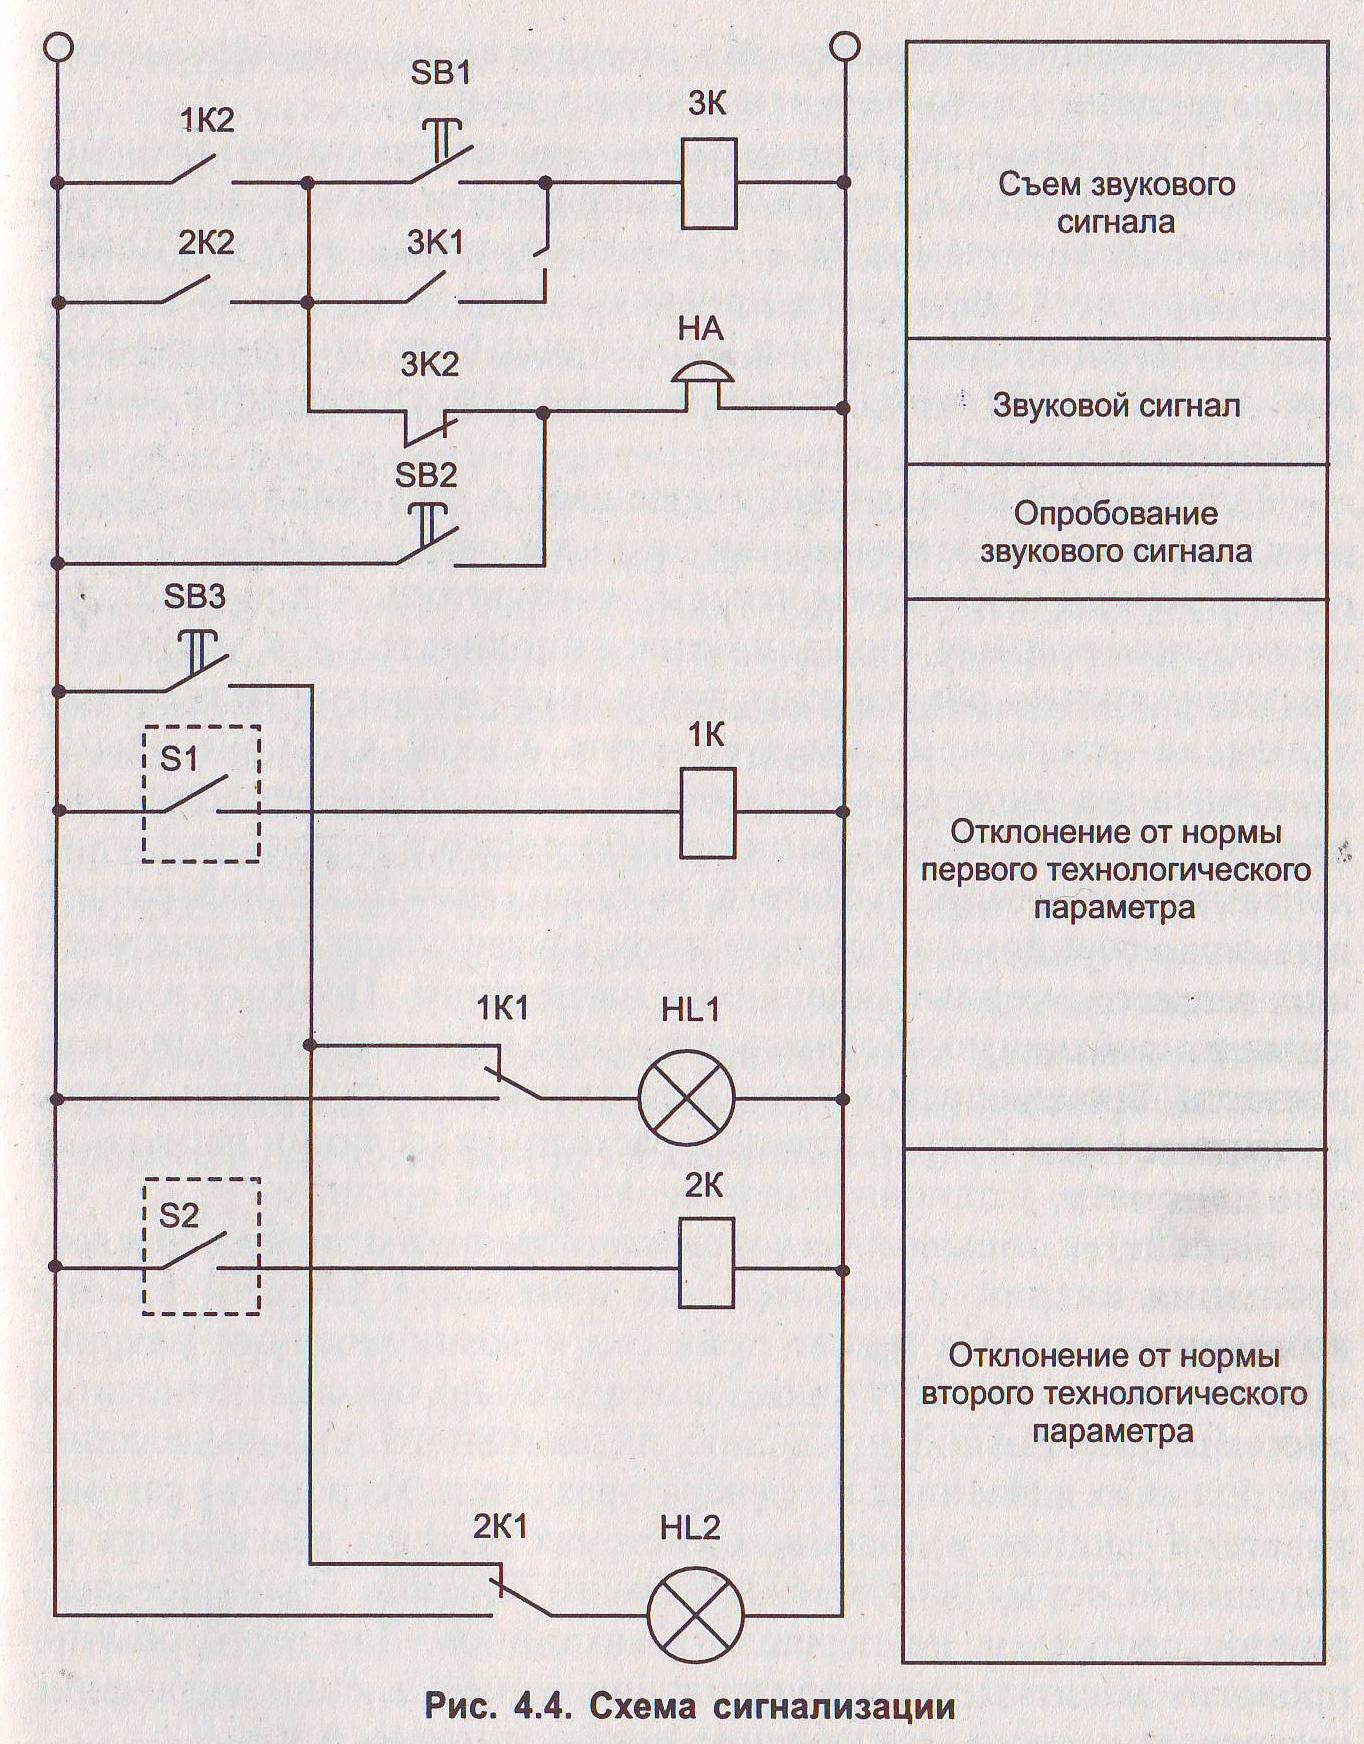 Системы световой и звуковой сигнализации. Принципиальная электрическая схема технологической сигнализации. Схема сигнализации на 2 параметра. Принципиальная схема сигнализации автомобиля. Схема квитирования звукового сигнала.